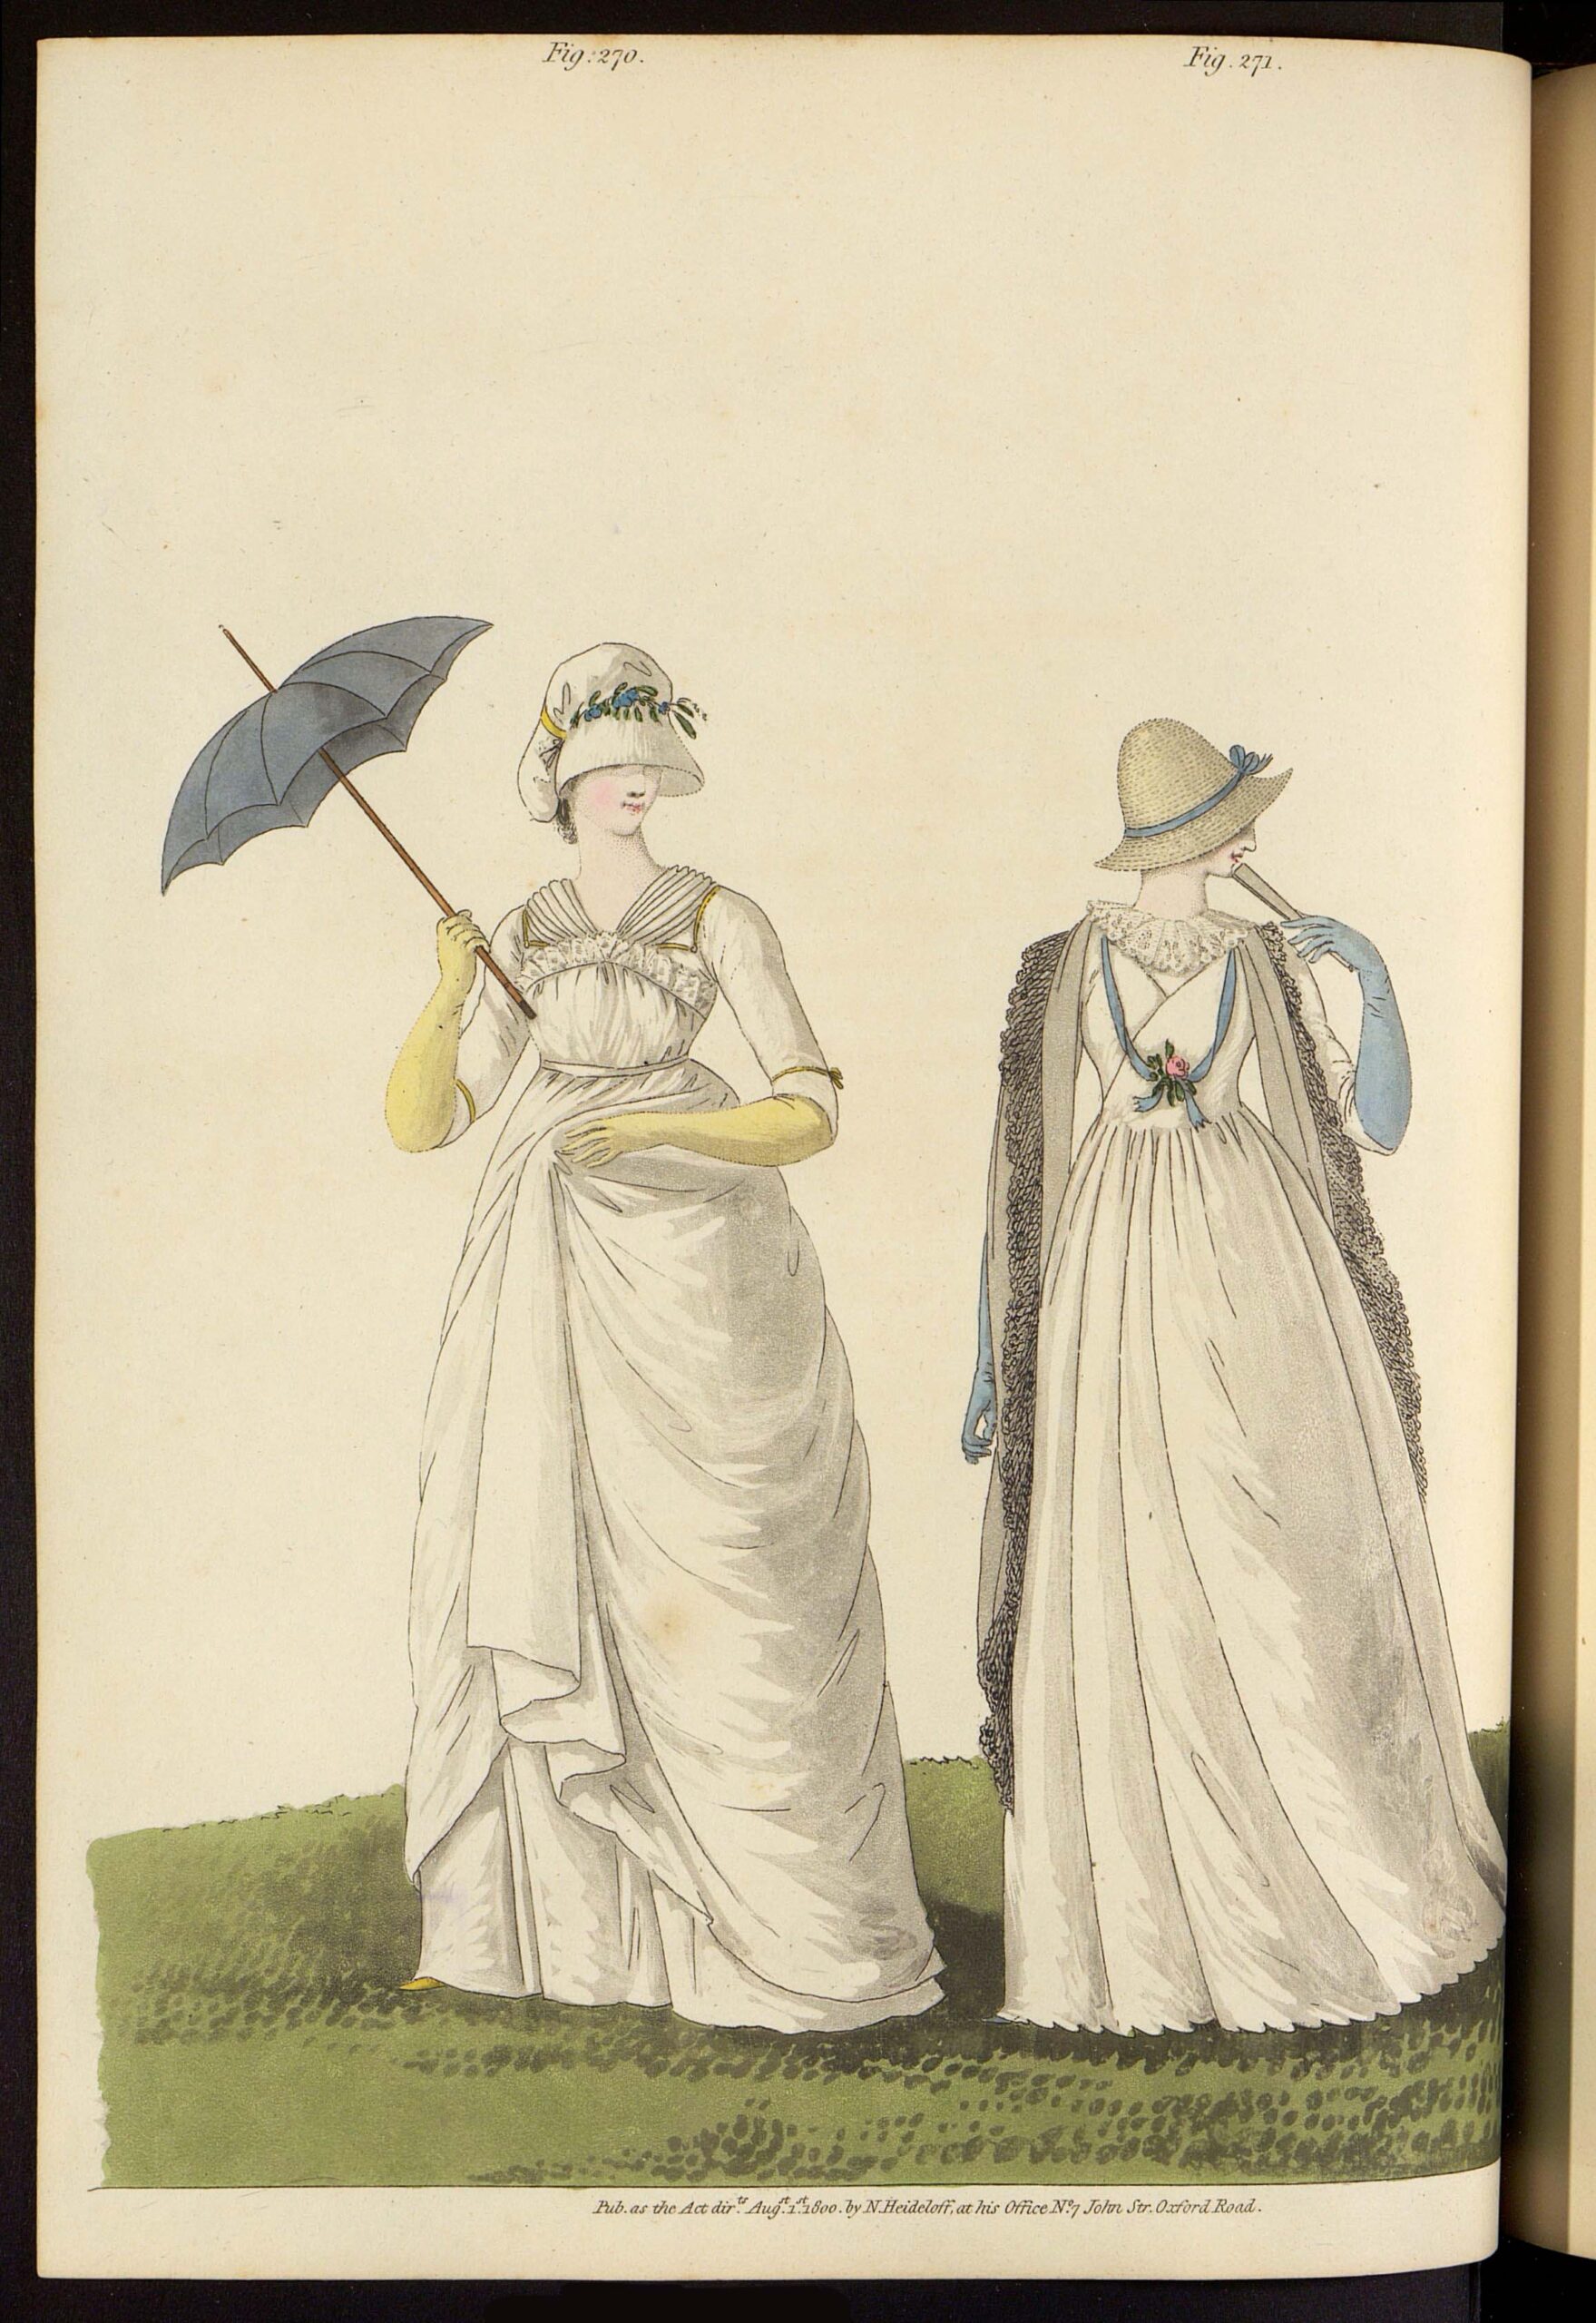 Утренние платья. Лист из журнала «Gallery of fashion»Великобритания, 1800 г.